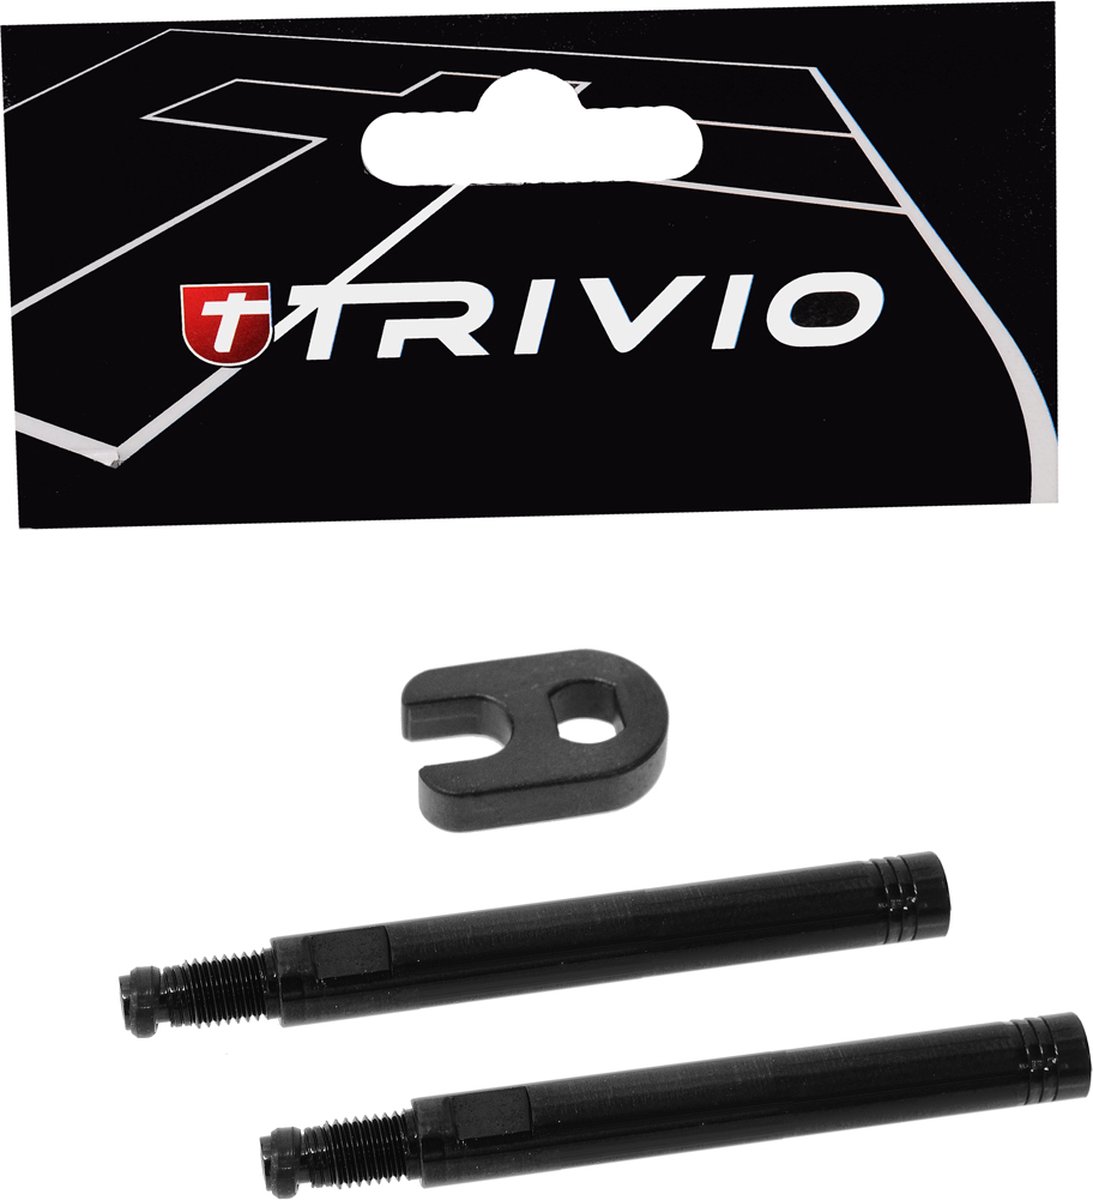 Trivio - Ventielverlenger Set Zwart 50MM Inclusief Gereedschap